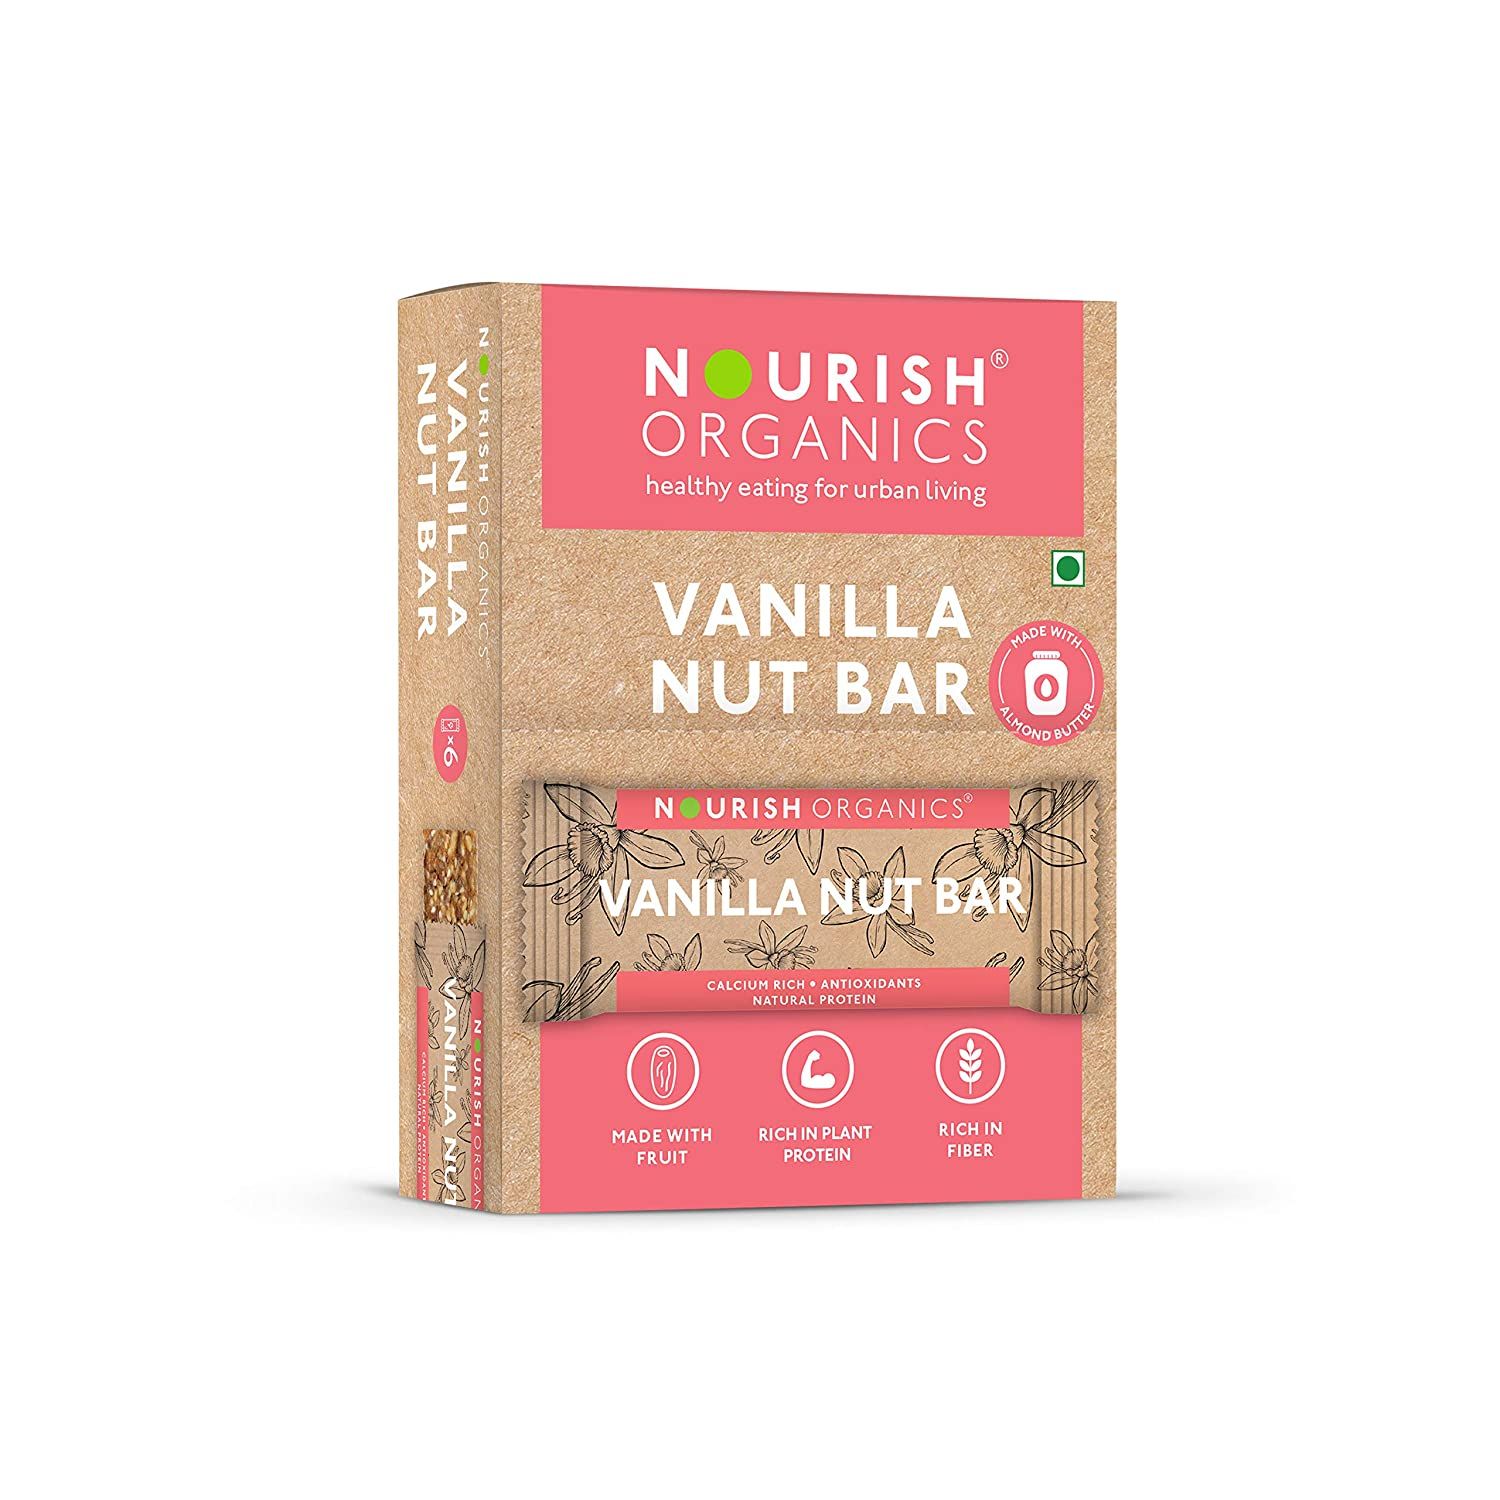 Nourish Organic Vanilla Nut Bar Image